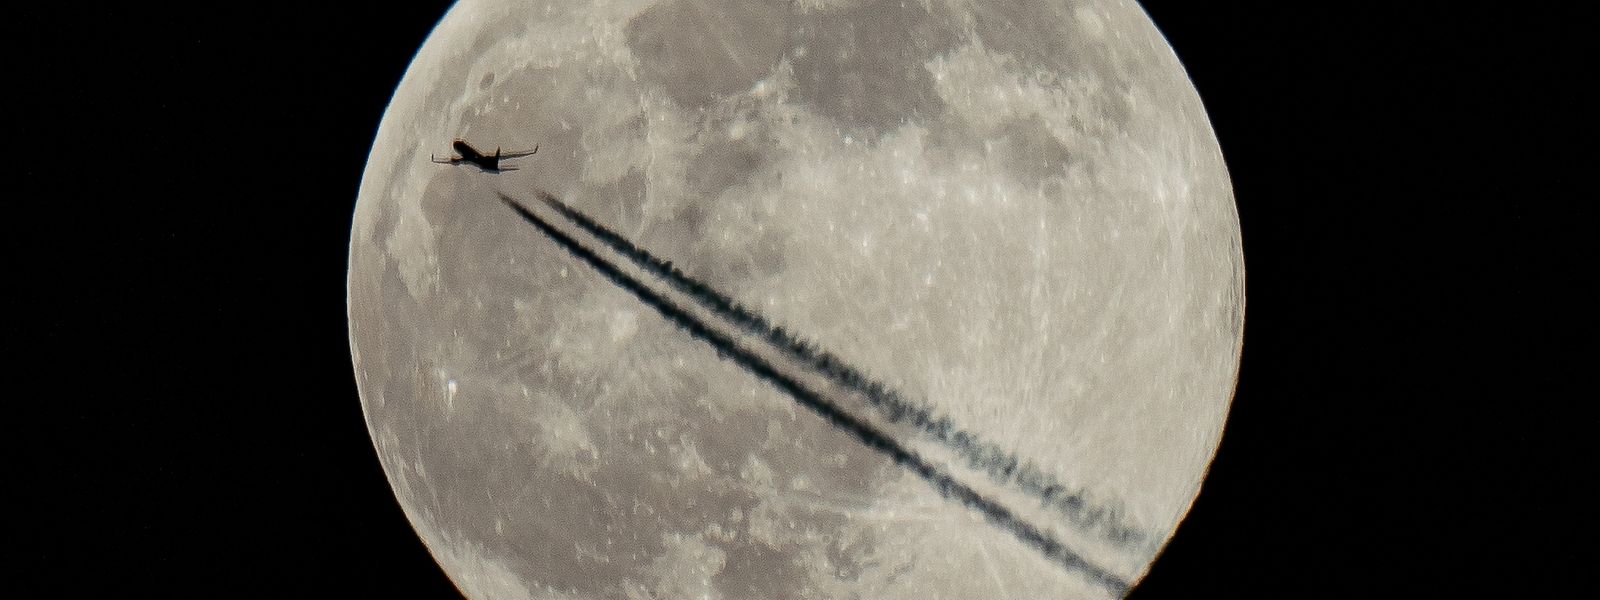 Ein Flugzeug fliegt am Mond vorbei, dem ersten Vollmond des Jahres 2022, der von nordamerikanischen Ureinwohnern als "Wolfsmond" bezeichnet wird.